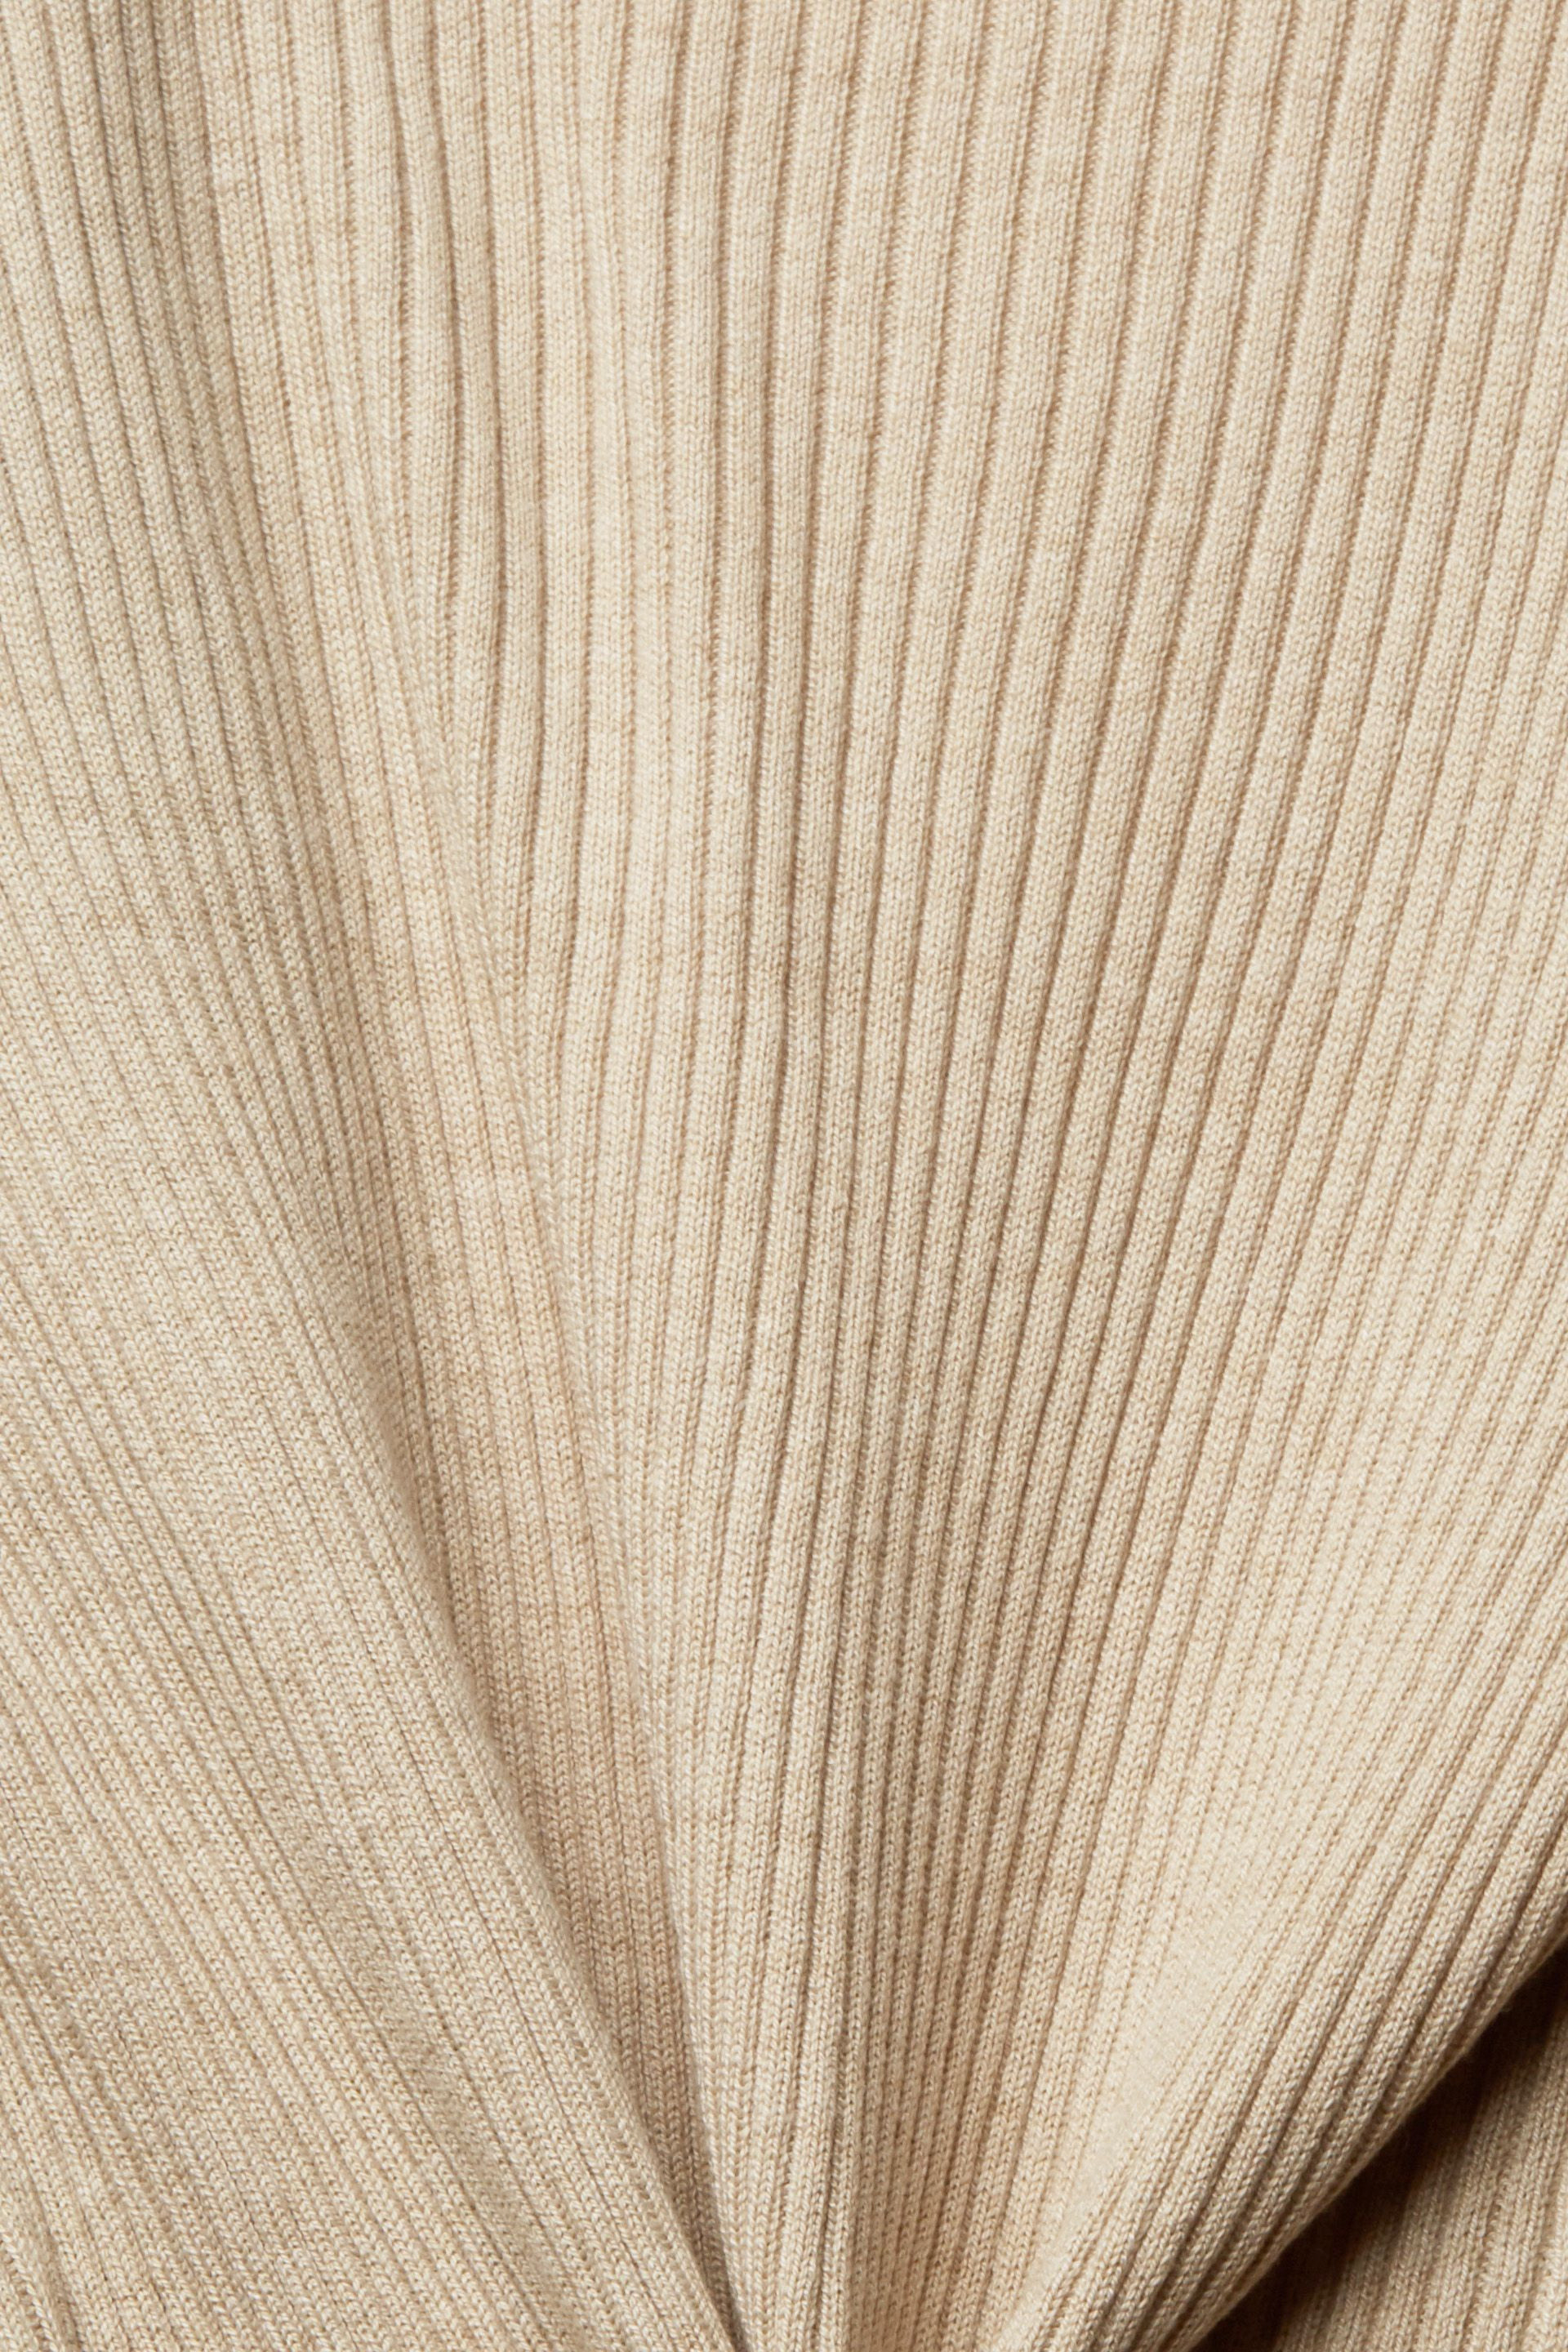 Esprit - Ribbed cardigan, Light Beige, large image number 3